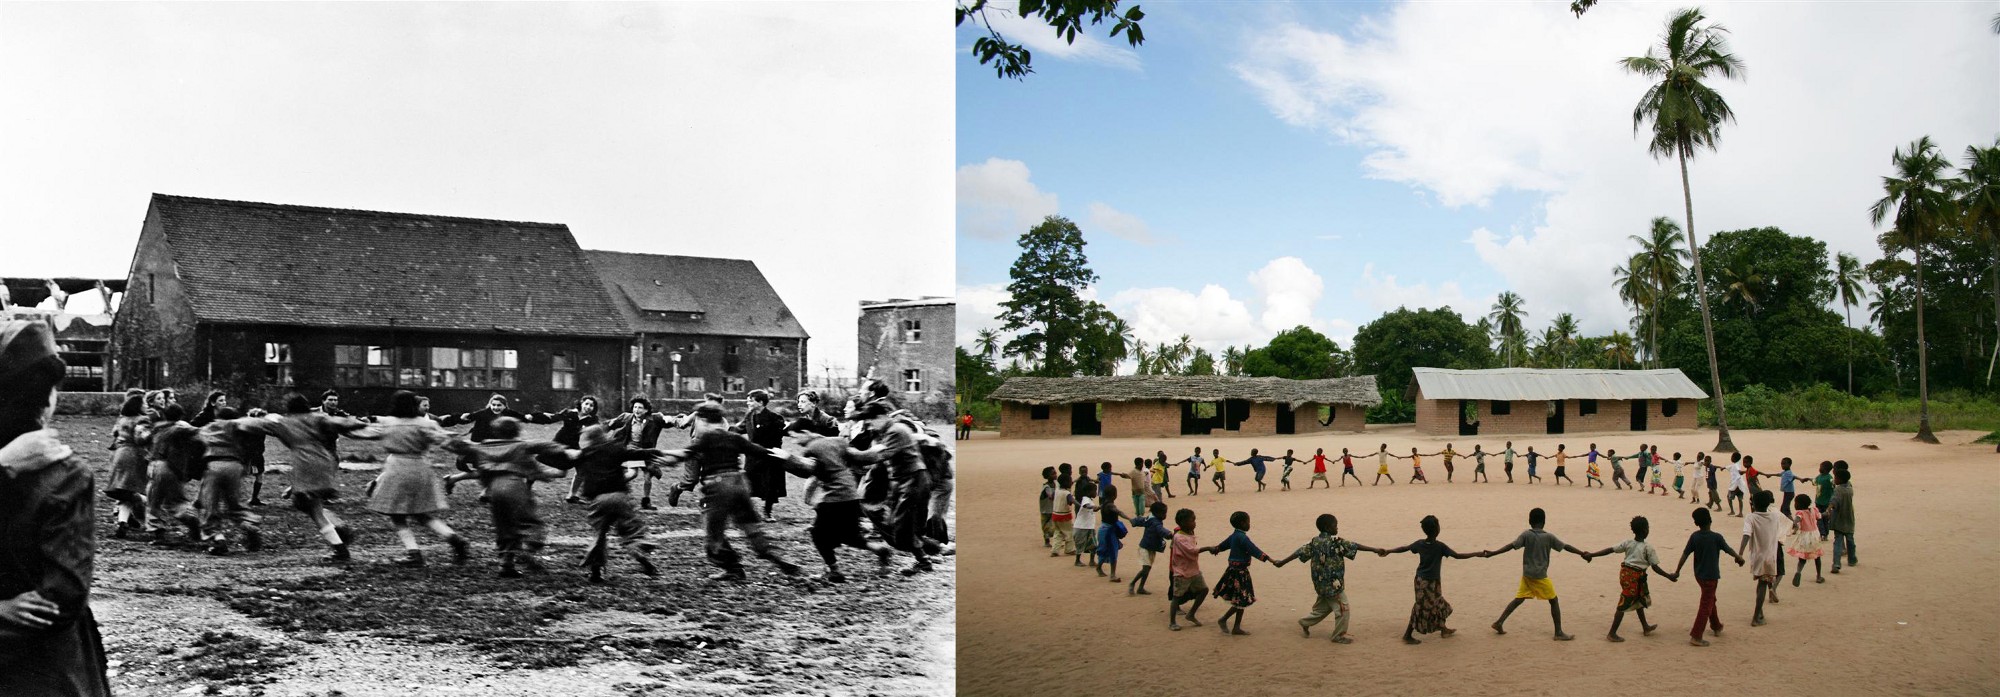 70 Jahre UNICEF: Kinder beim Tanzen im Jahre 1946 und 2006